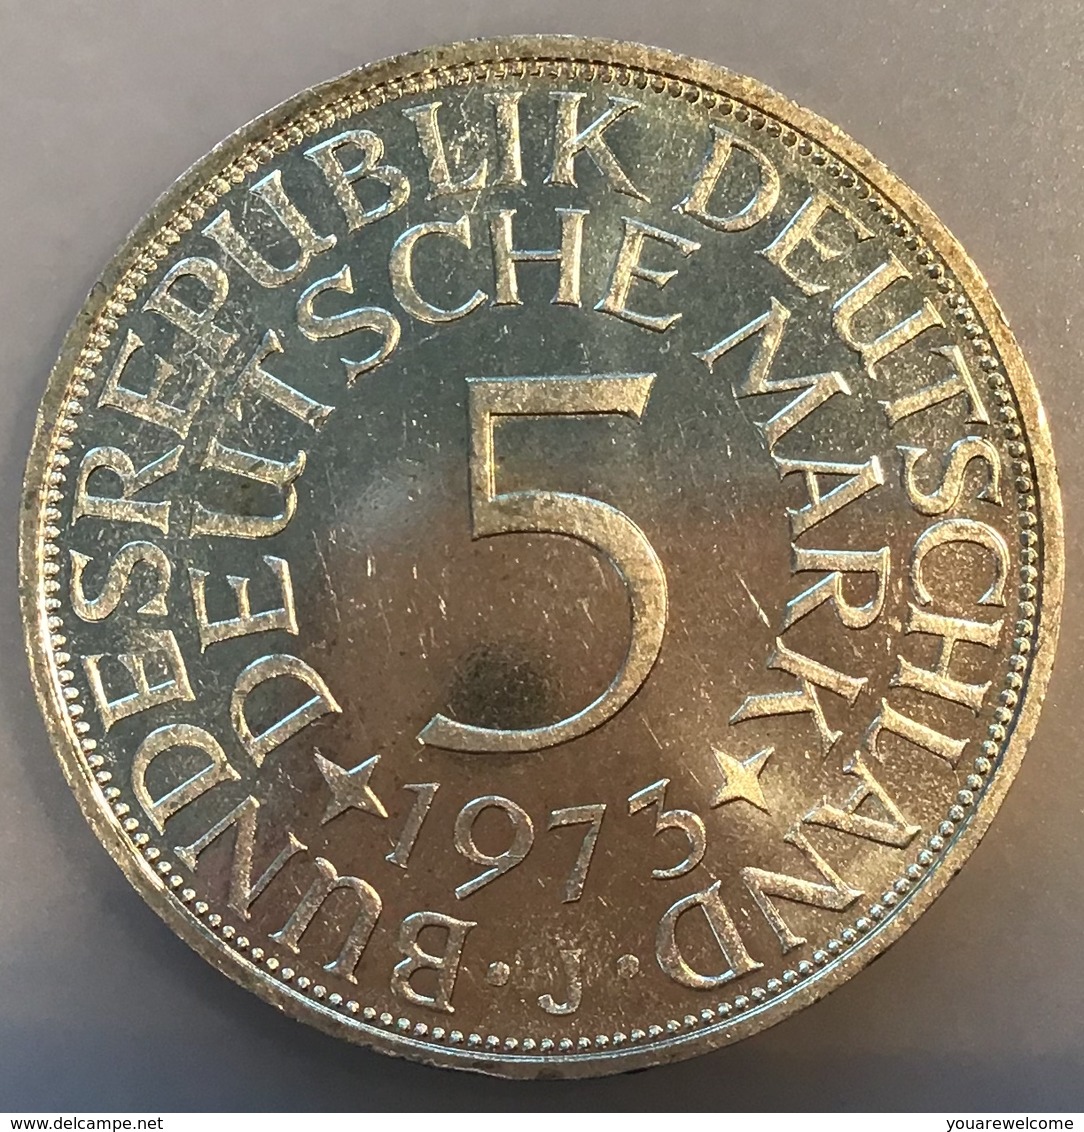 BRD 5 Mark 1973 J  Stg TOP ERHALTUNG + 1973 F Bankfrisch - (Deutschland Münze Monnaie Coin Germany Allemagne - 5 Mark